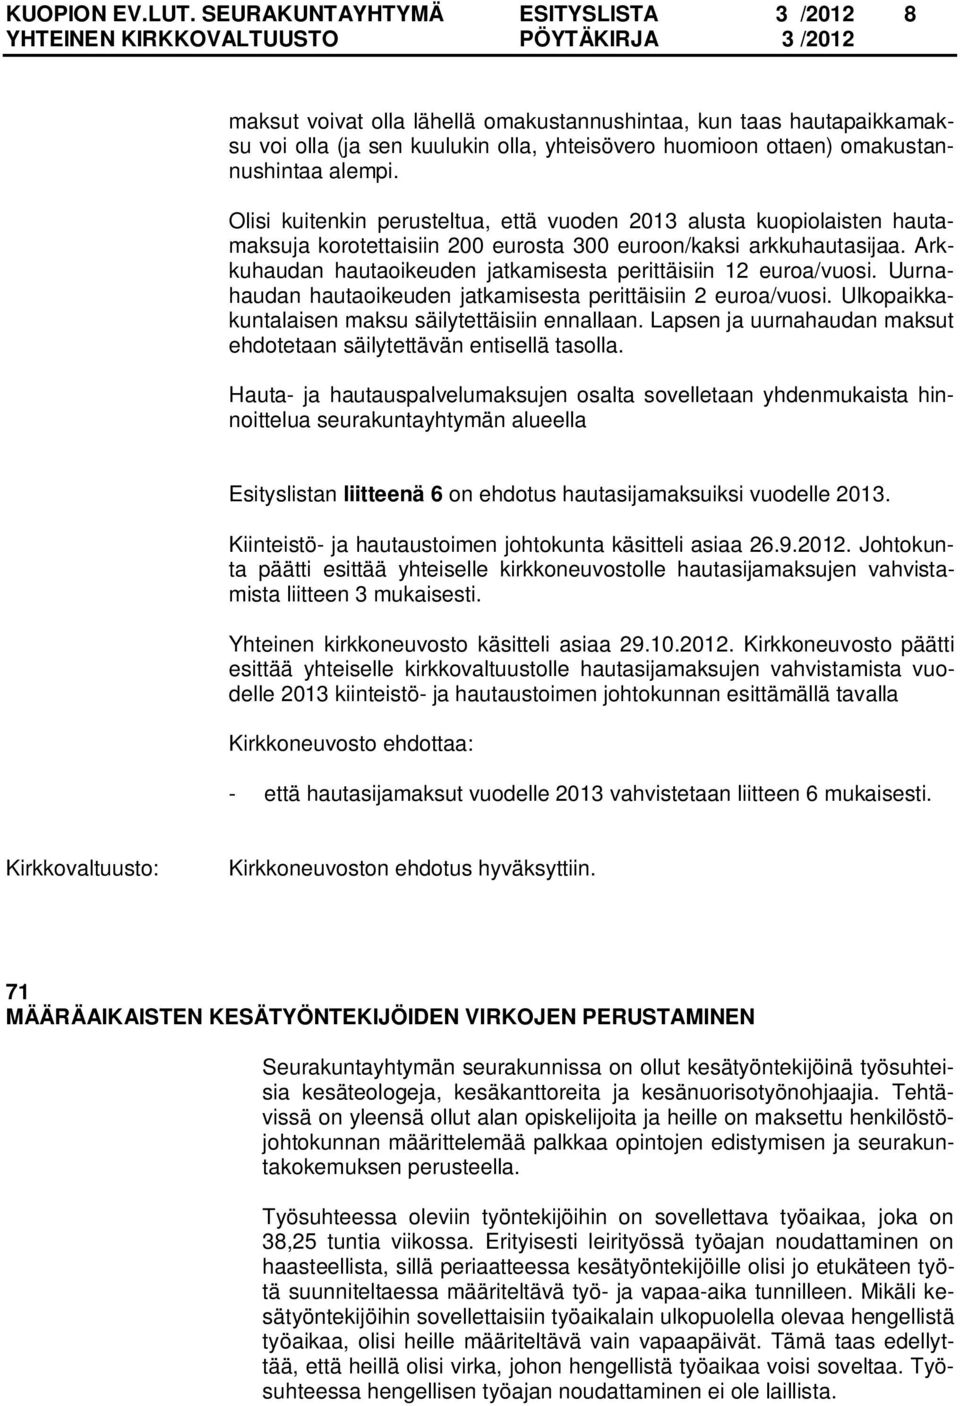 Olisi kuitenkin perusteltua, että vuoden 2013 alusta kuopiolaisten hautamaksuja korotettaisiin 200 eurosta 300 euroon/kaksi arkkuhautasijaa.